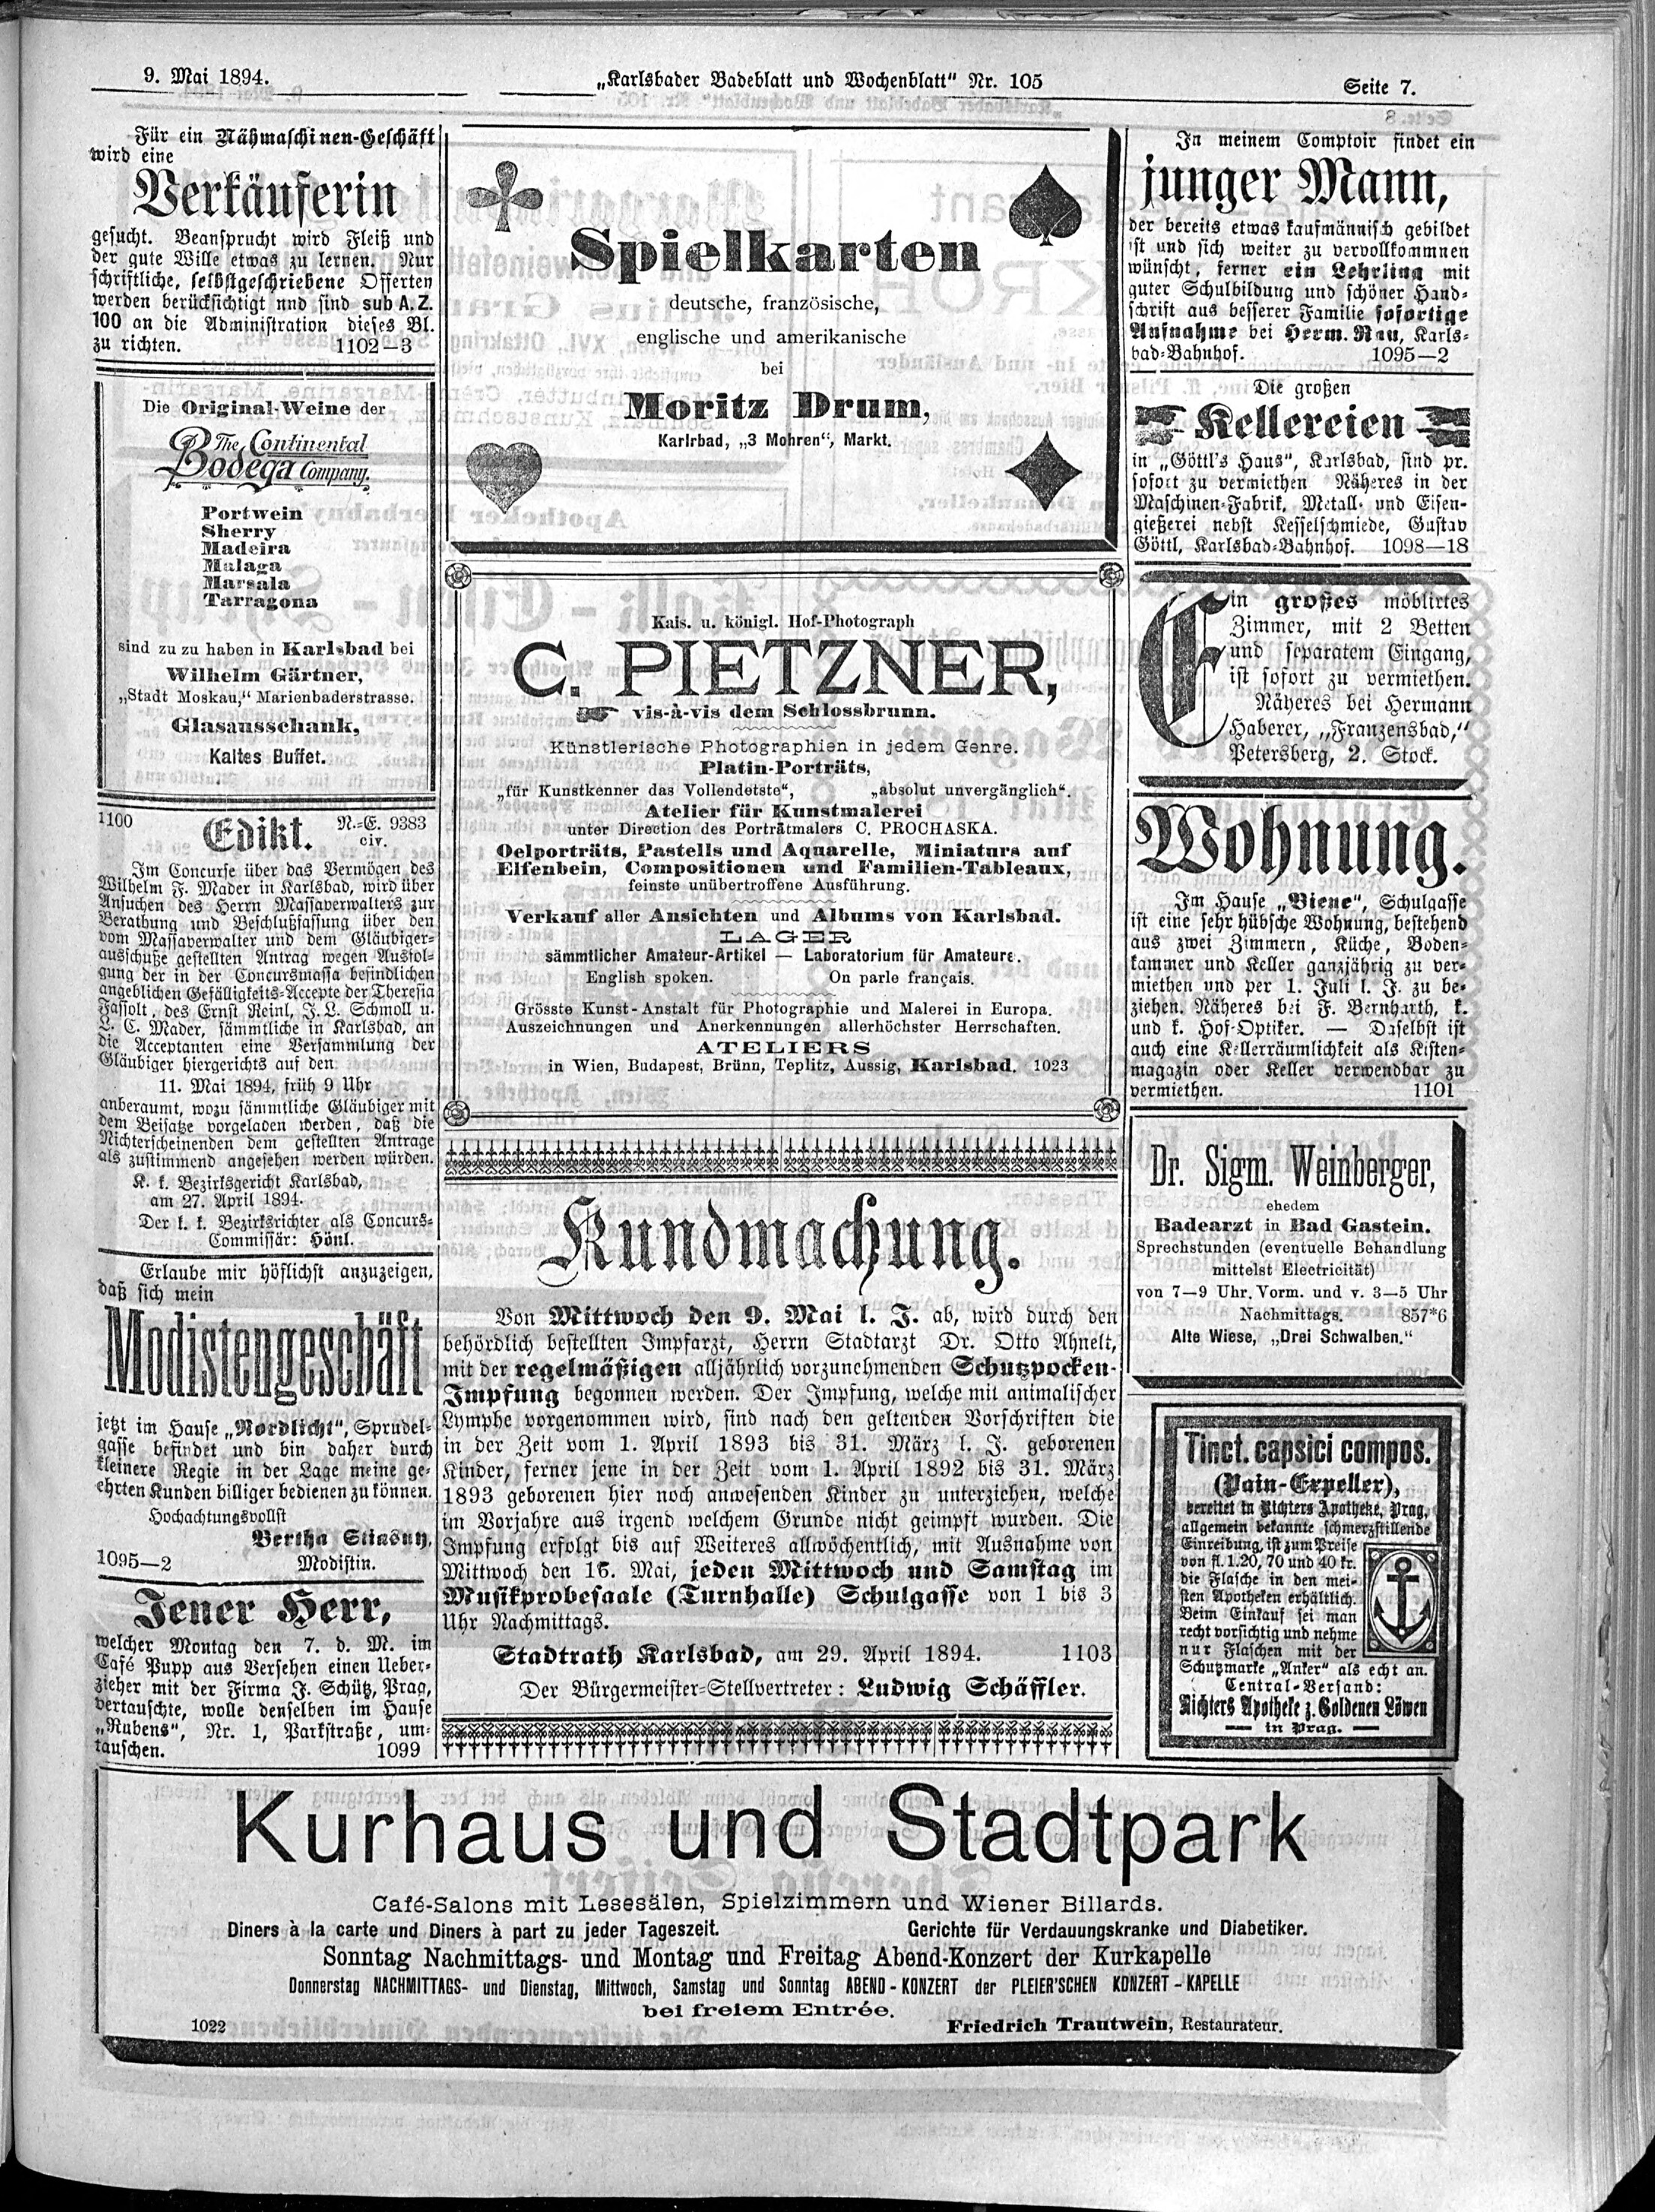 11. karlsbader-badeblatt-1894-05-09-n105_4435